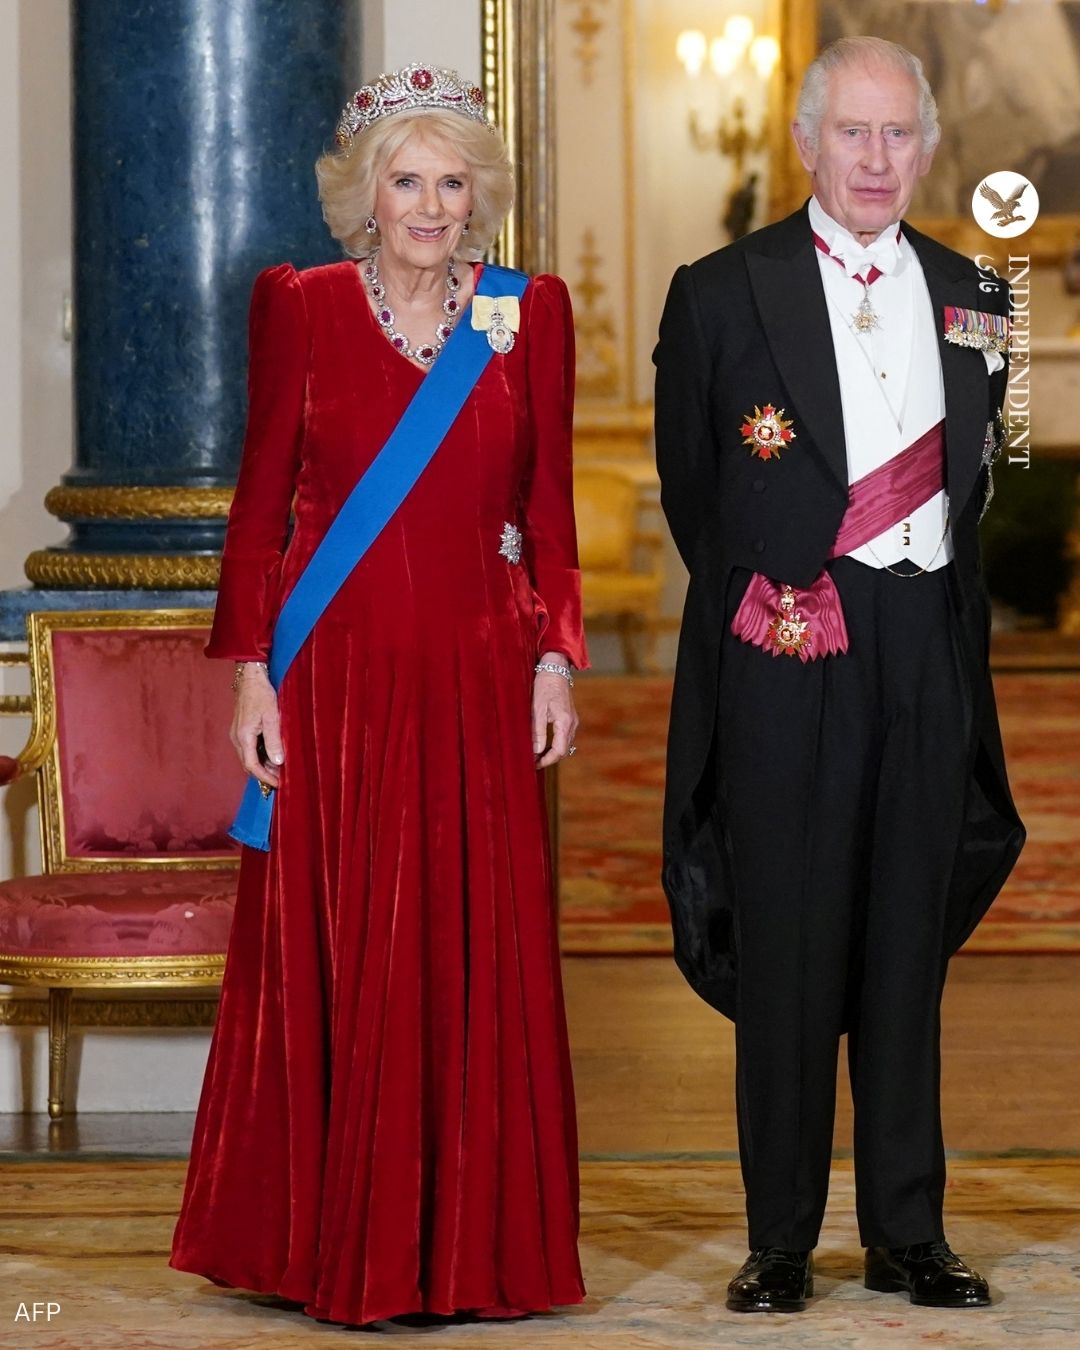 جواهرات خانواده سلطنتی بریتانیا در دیدار رسمی (3).jpg